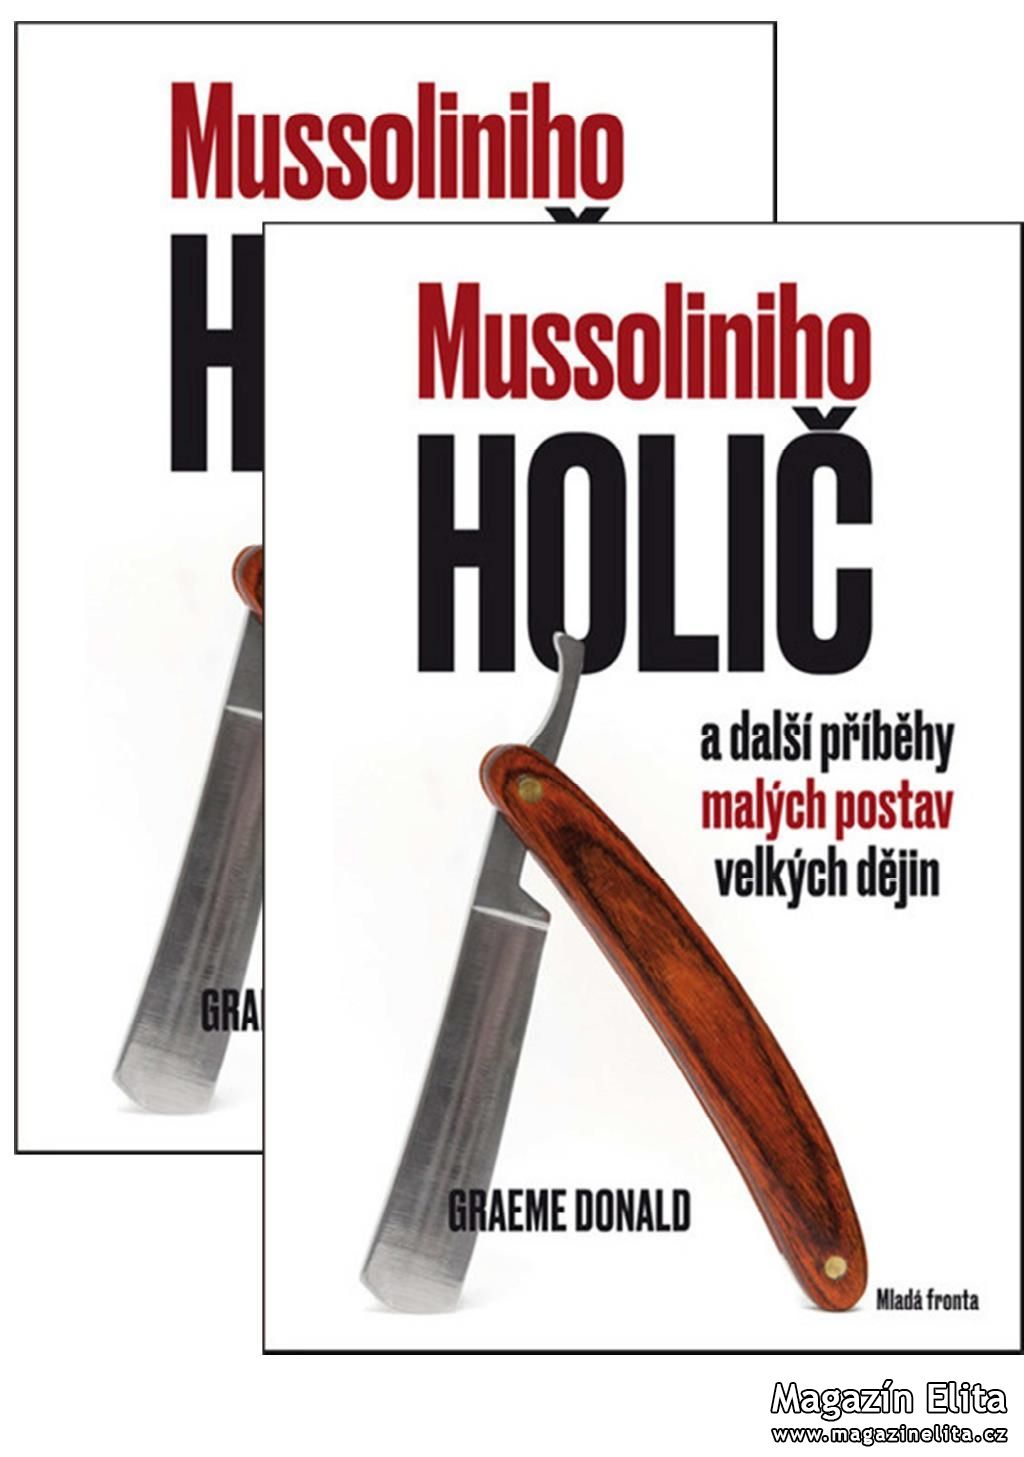 Graeme Donald: Mussoliniho holič